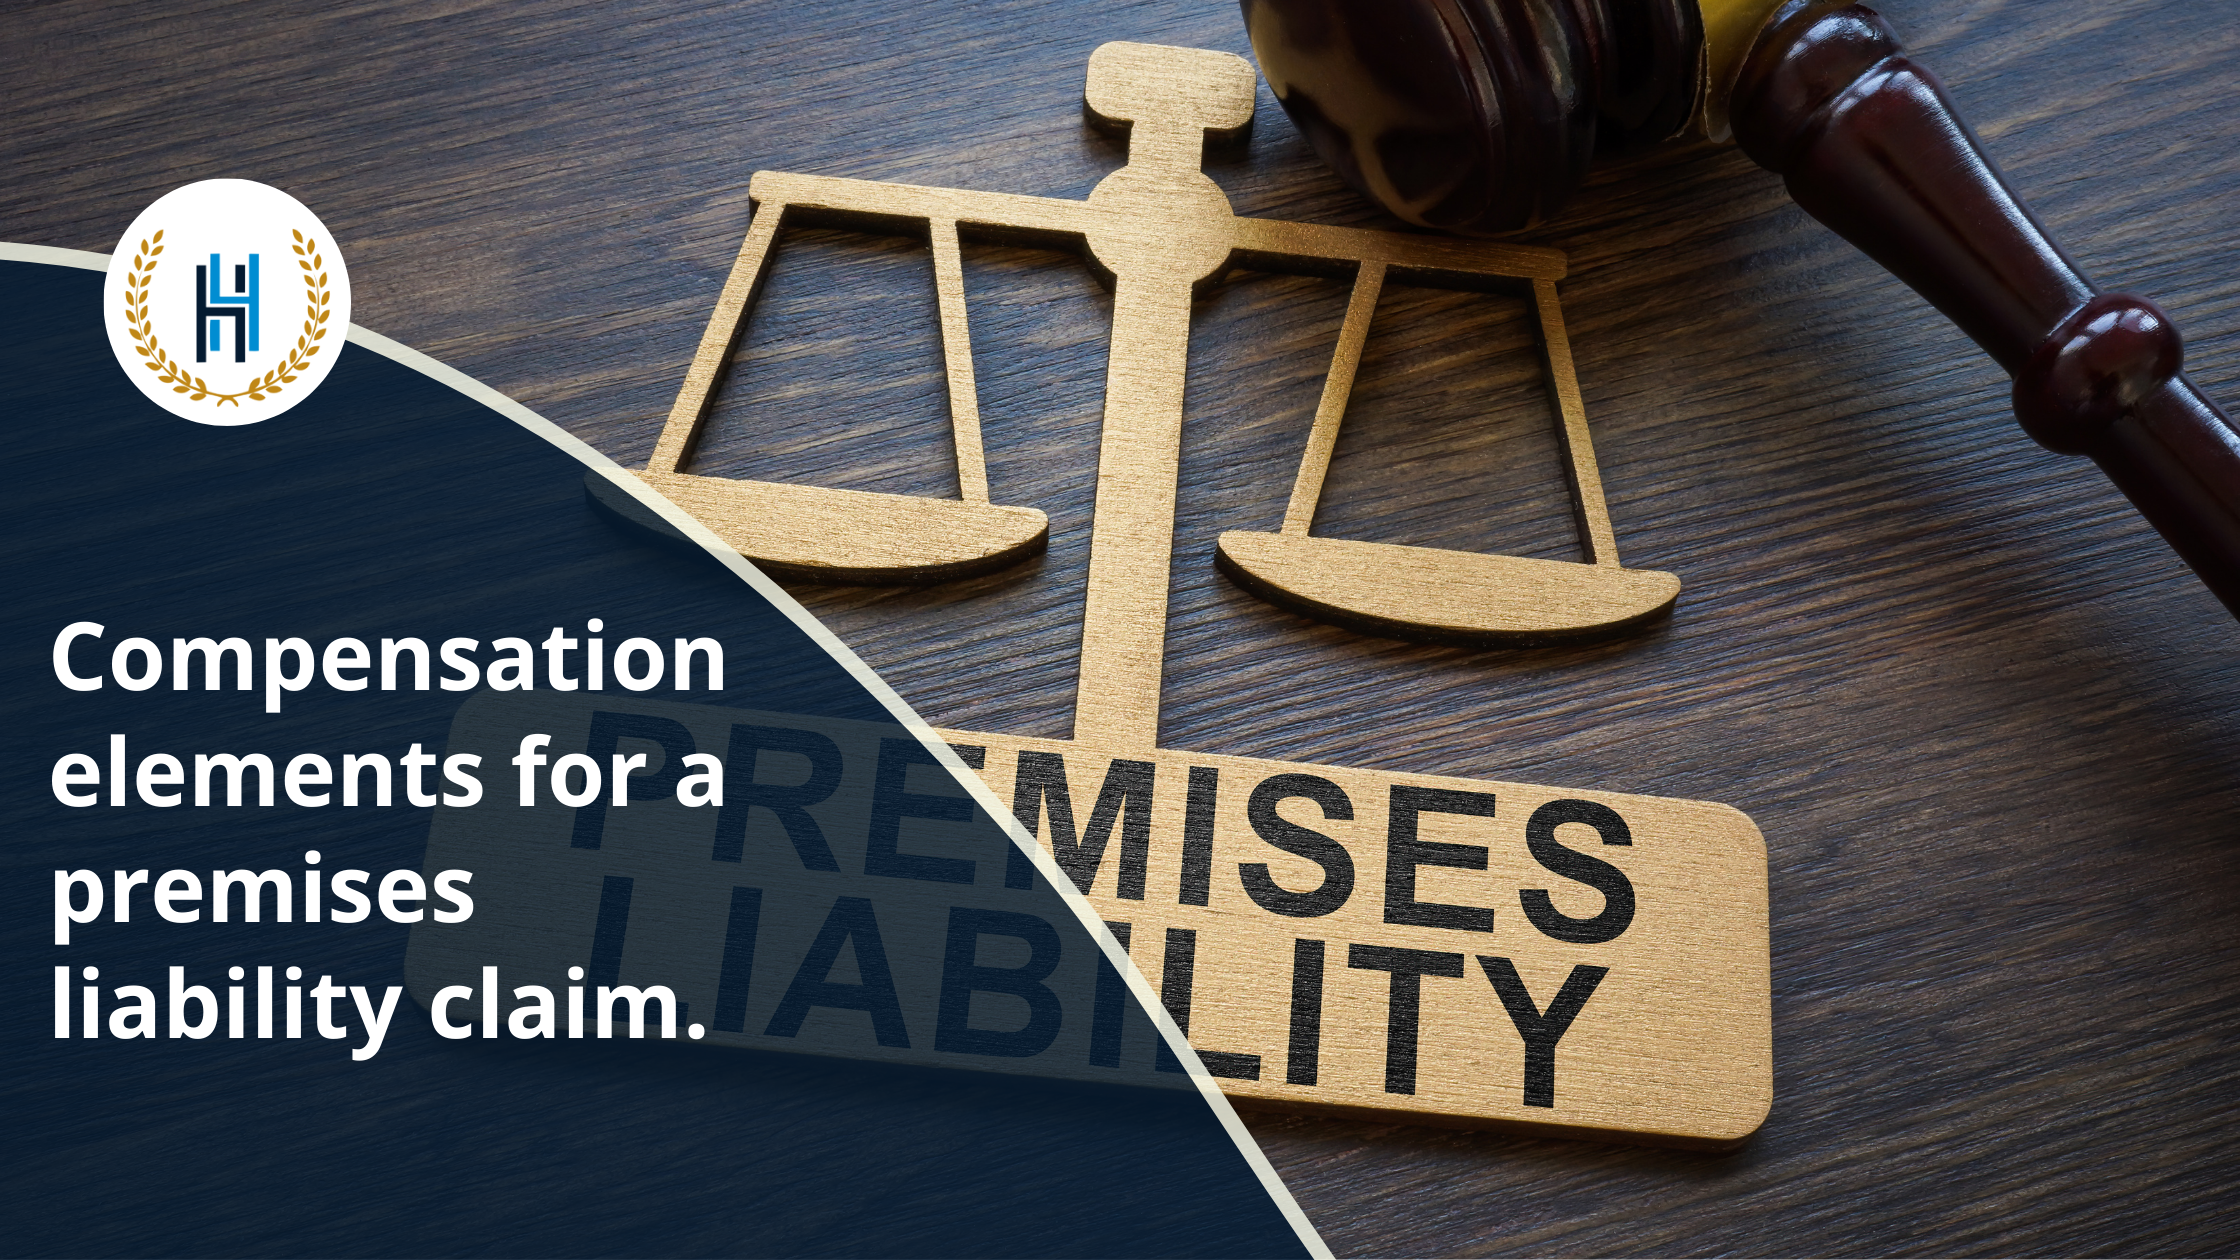 Compensation elements for a premises liability claim | 2H Law